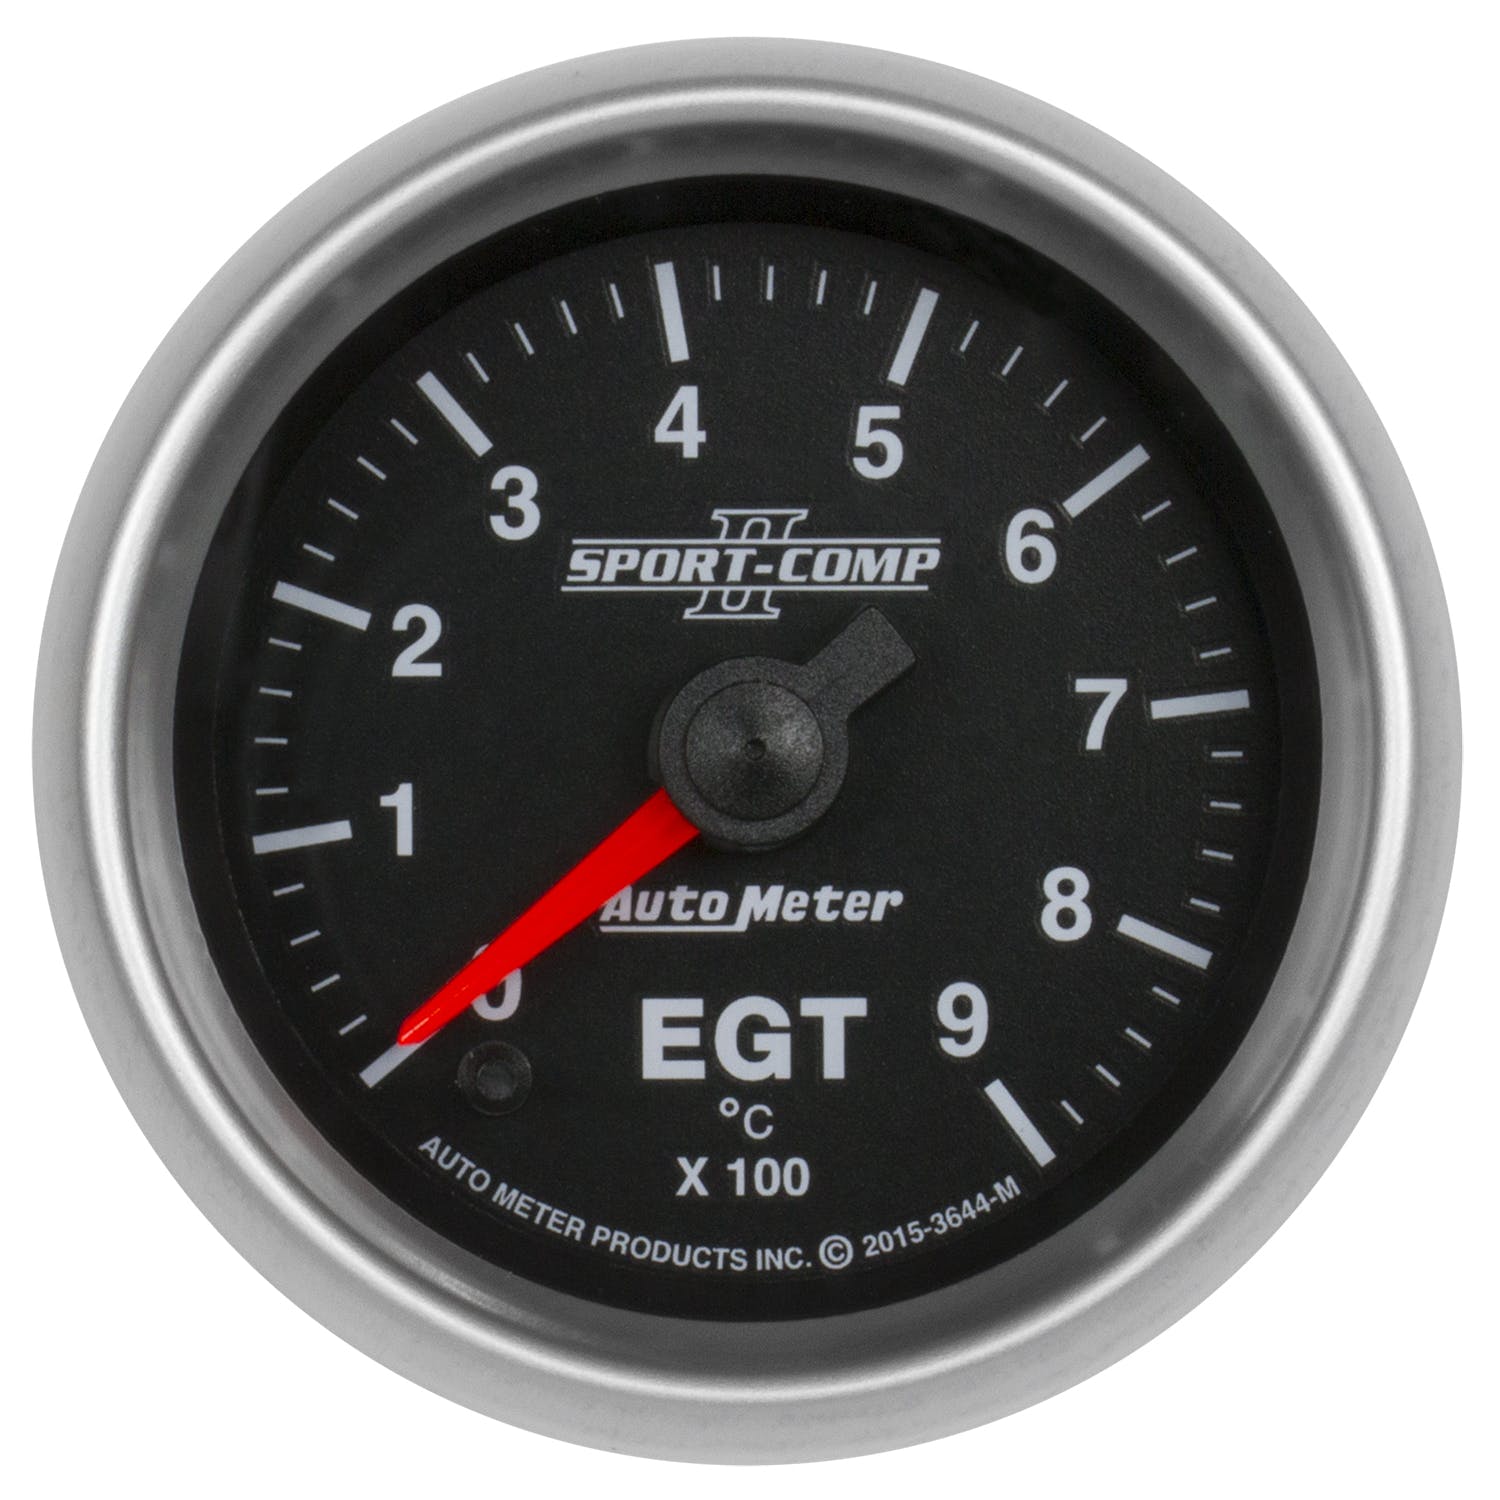 AutoMeter Products 3644-M Pyrometer Gauge (EGT), 2 1/16 900, Digital Stepper Motor, Sport Comp II